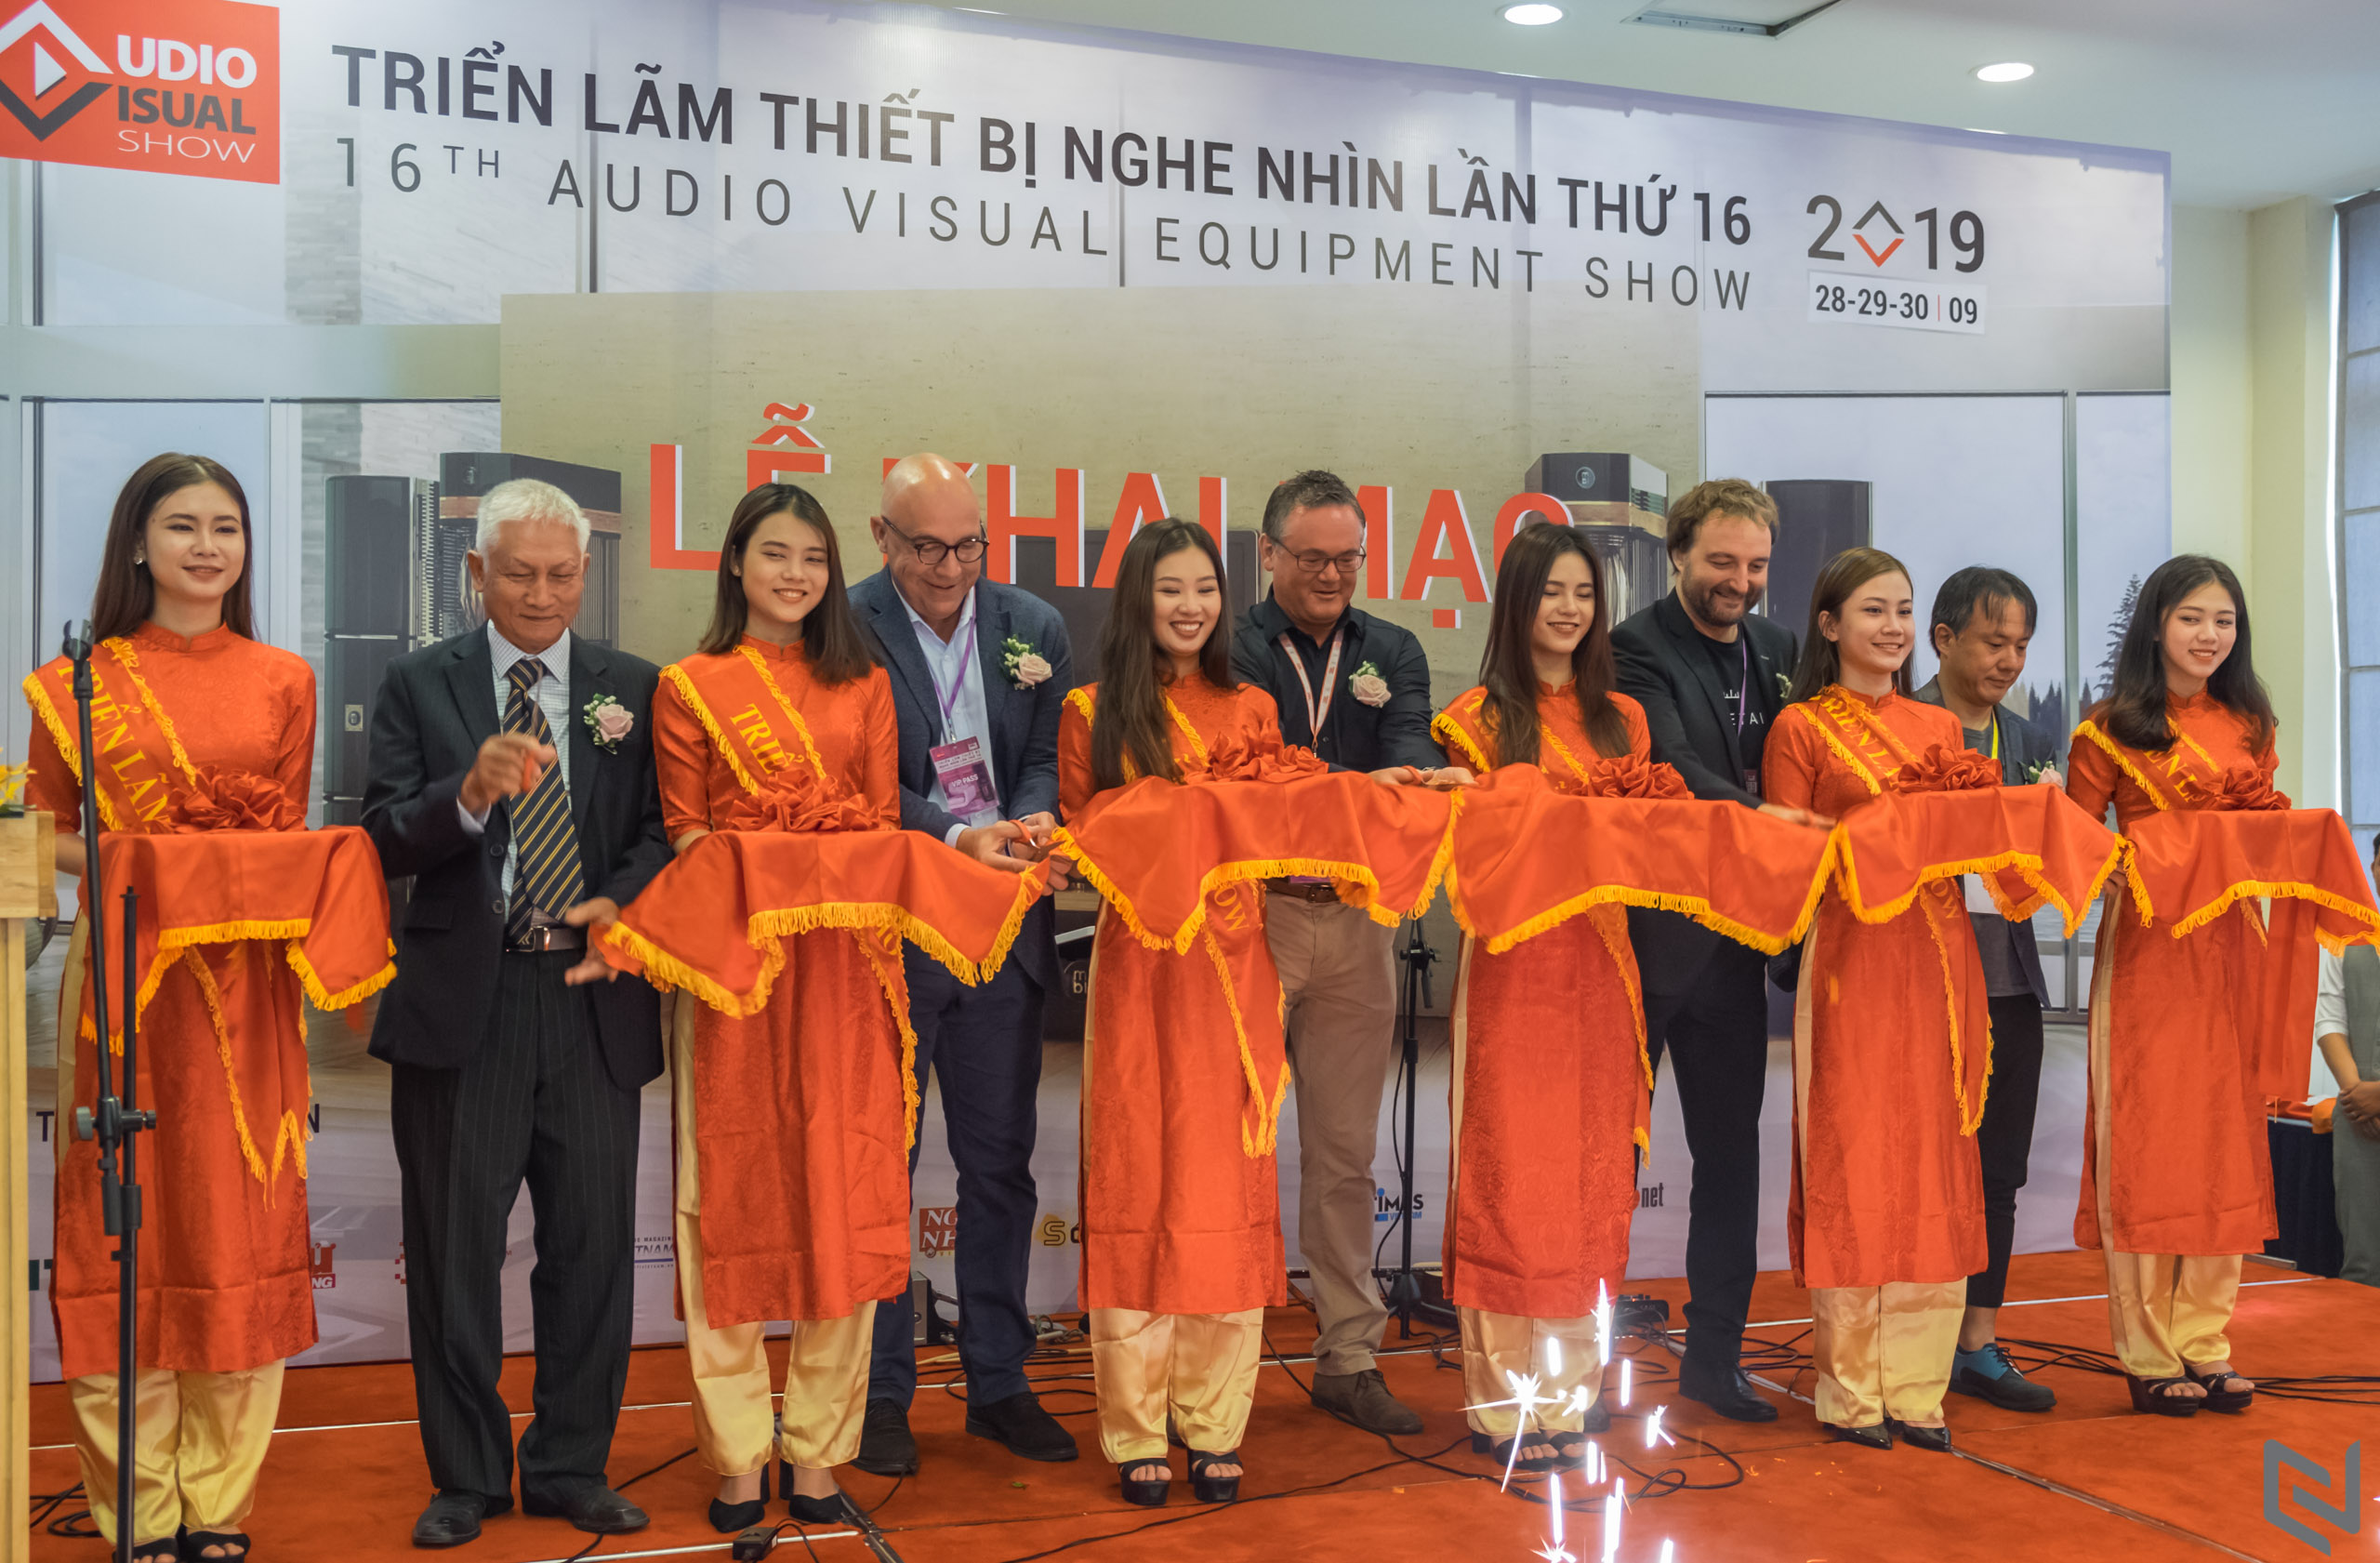 AV Show 2019 – Triển lãm thiết bị nghe nhìn Việt Nam lần thứ 16 chính thức khai mạc, diễn ra trong 28-29-30/9/2019